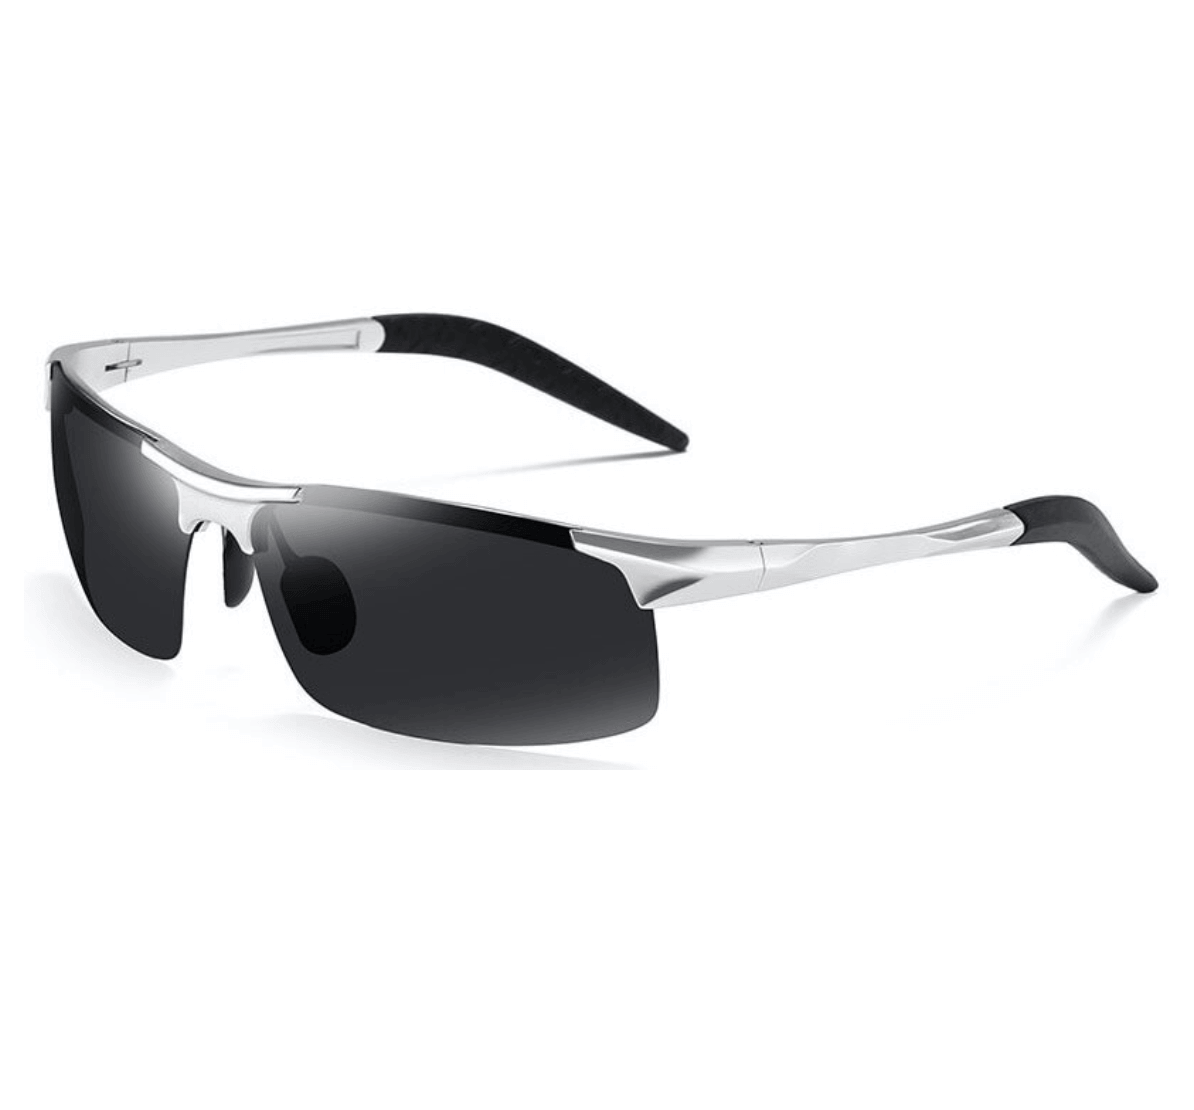 mens wholesale sunglasses, wholesale riding sunglasses, wholesale sunglasses supplier